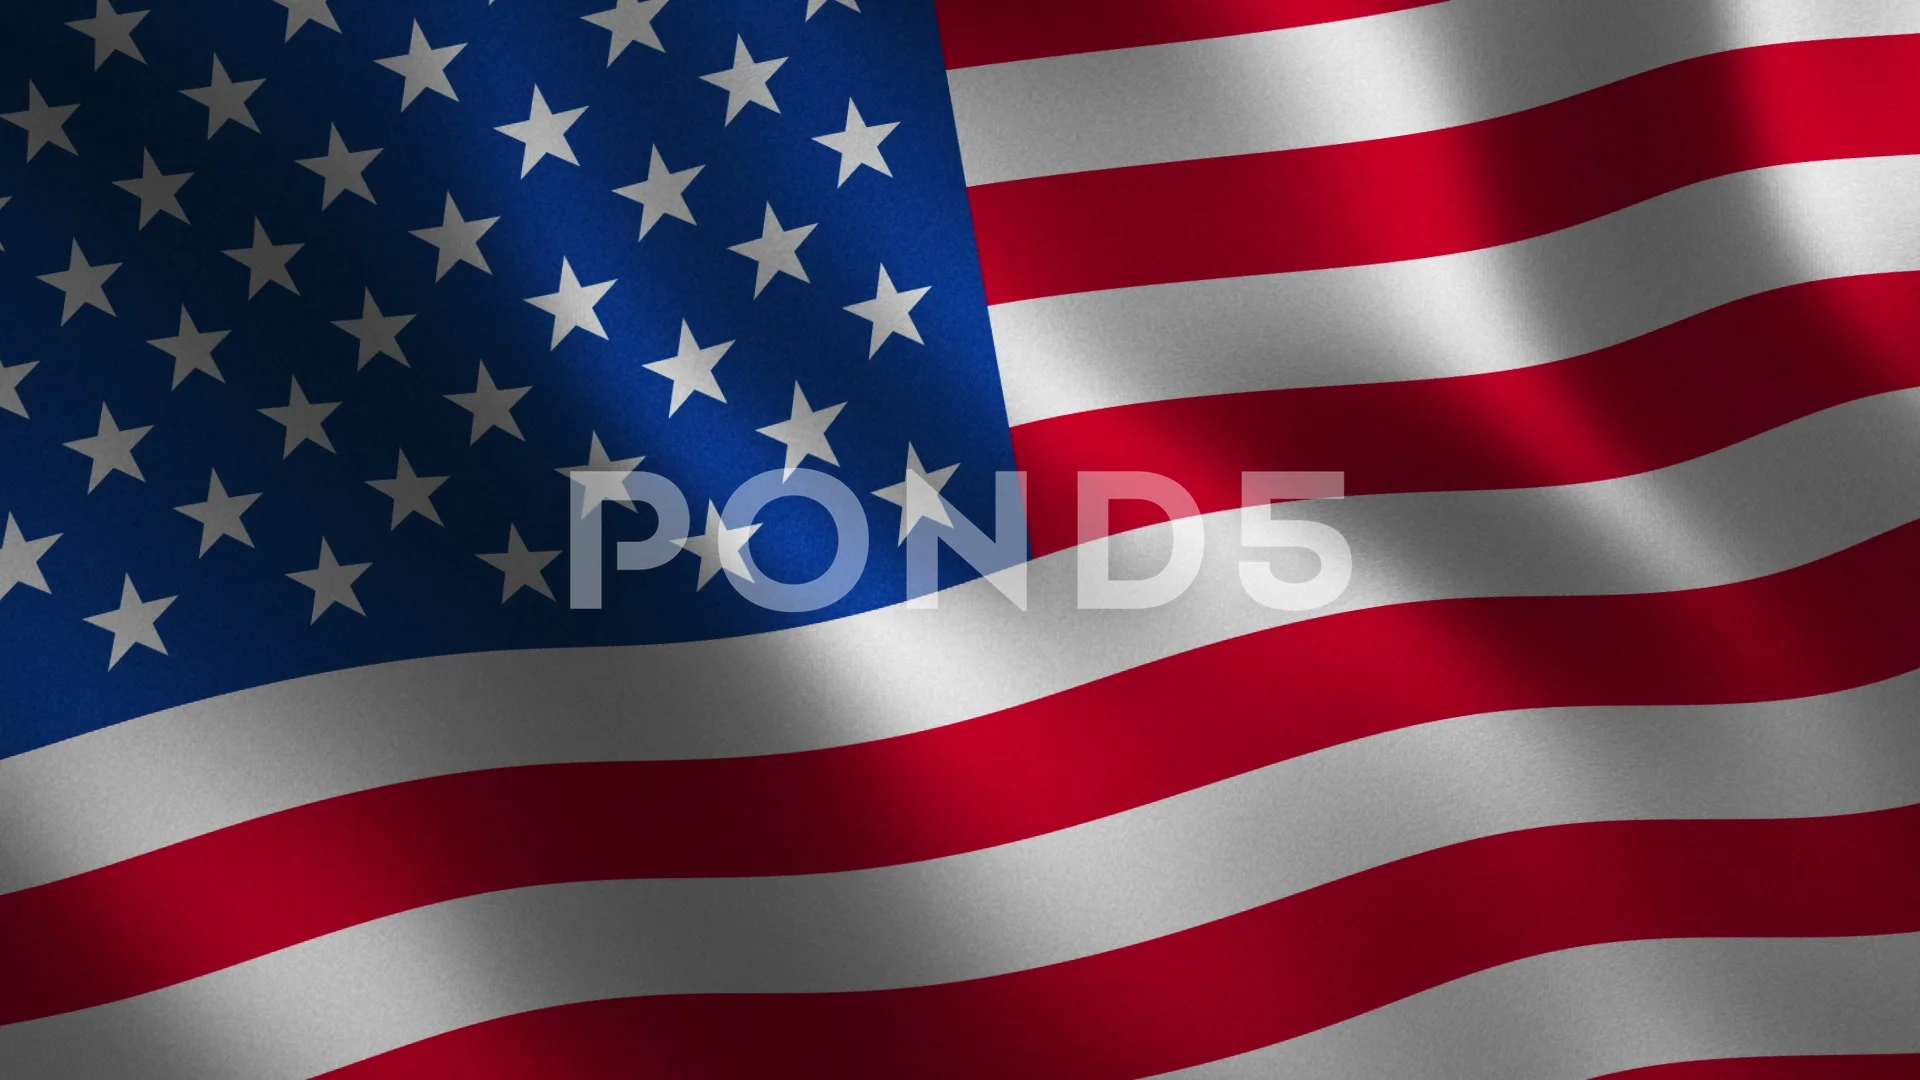 american flag desktop backgrounds